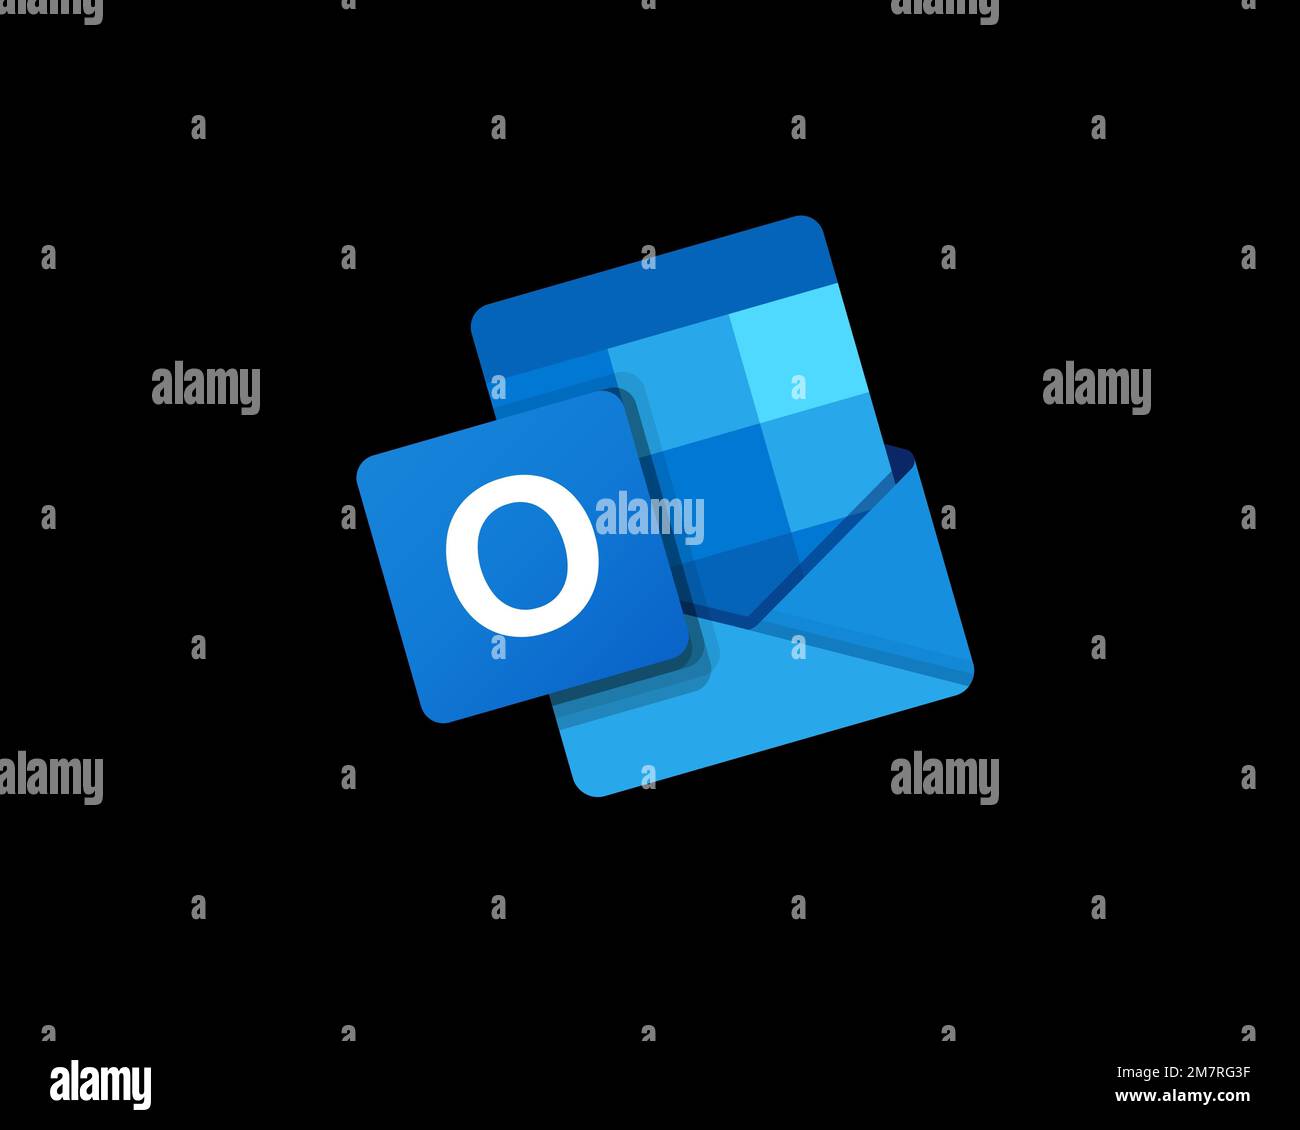 Nhìn vào hình ảnh liên quan, bạn sẽ nhận ra đặc điểm nổi bật nhất của logo Outlook - xoay vòng trên nền đen. Điều này tạo ra một cảm giác hiện đại và chuyên nghiệp khi sử dụng Outlook. Nhấn vào hình ảnh để biết thêm chi tiết và trải nghiệm logo xoay vòng này ngay hôm nay!